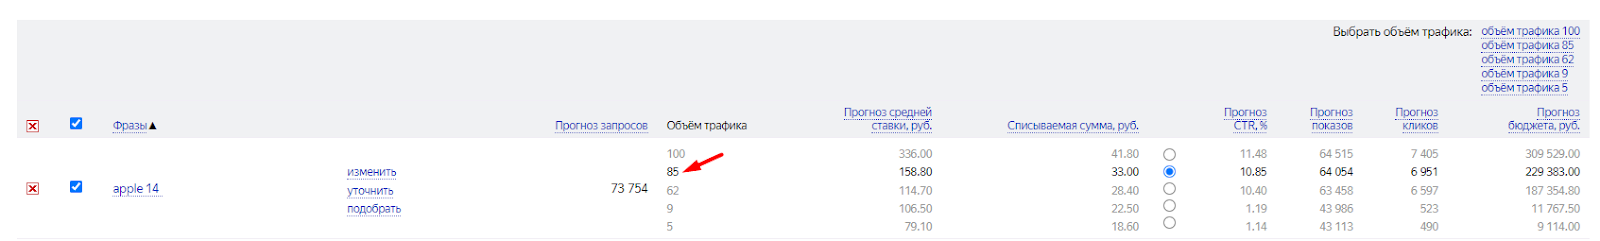 Инструмент «Прогноз бюджета» Яндекс Директа статистика